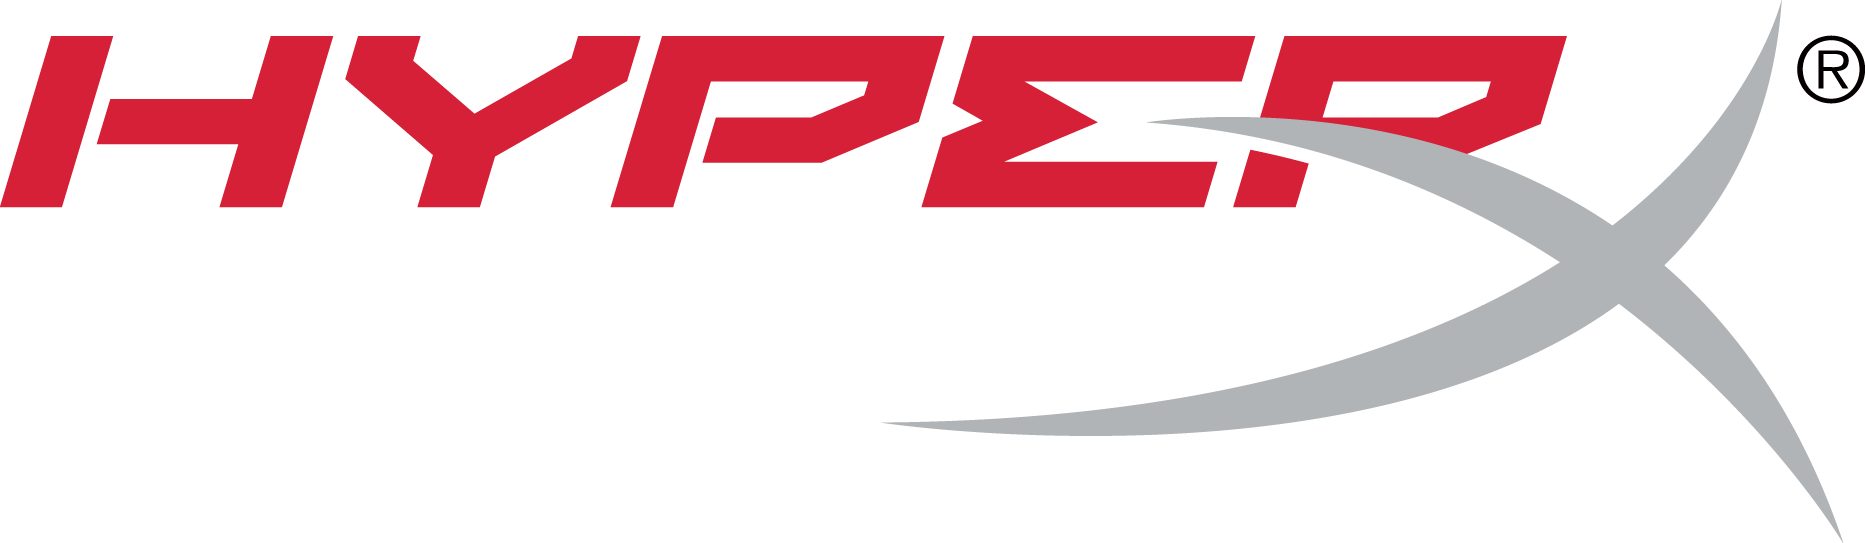 hyperX_R_logo.png